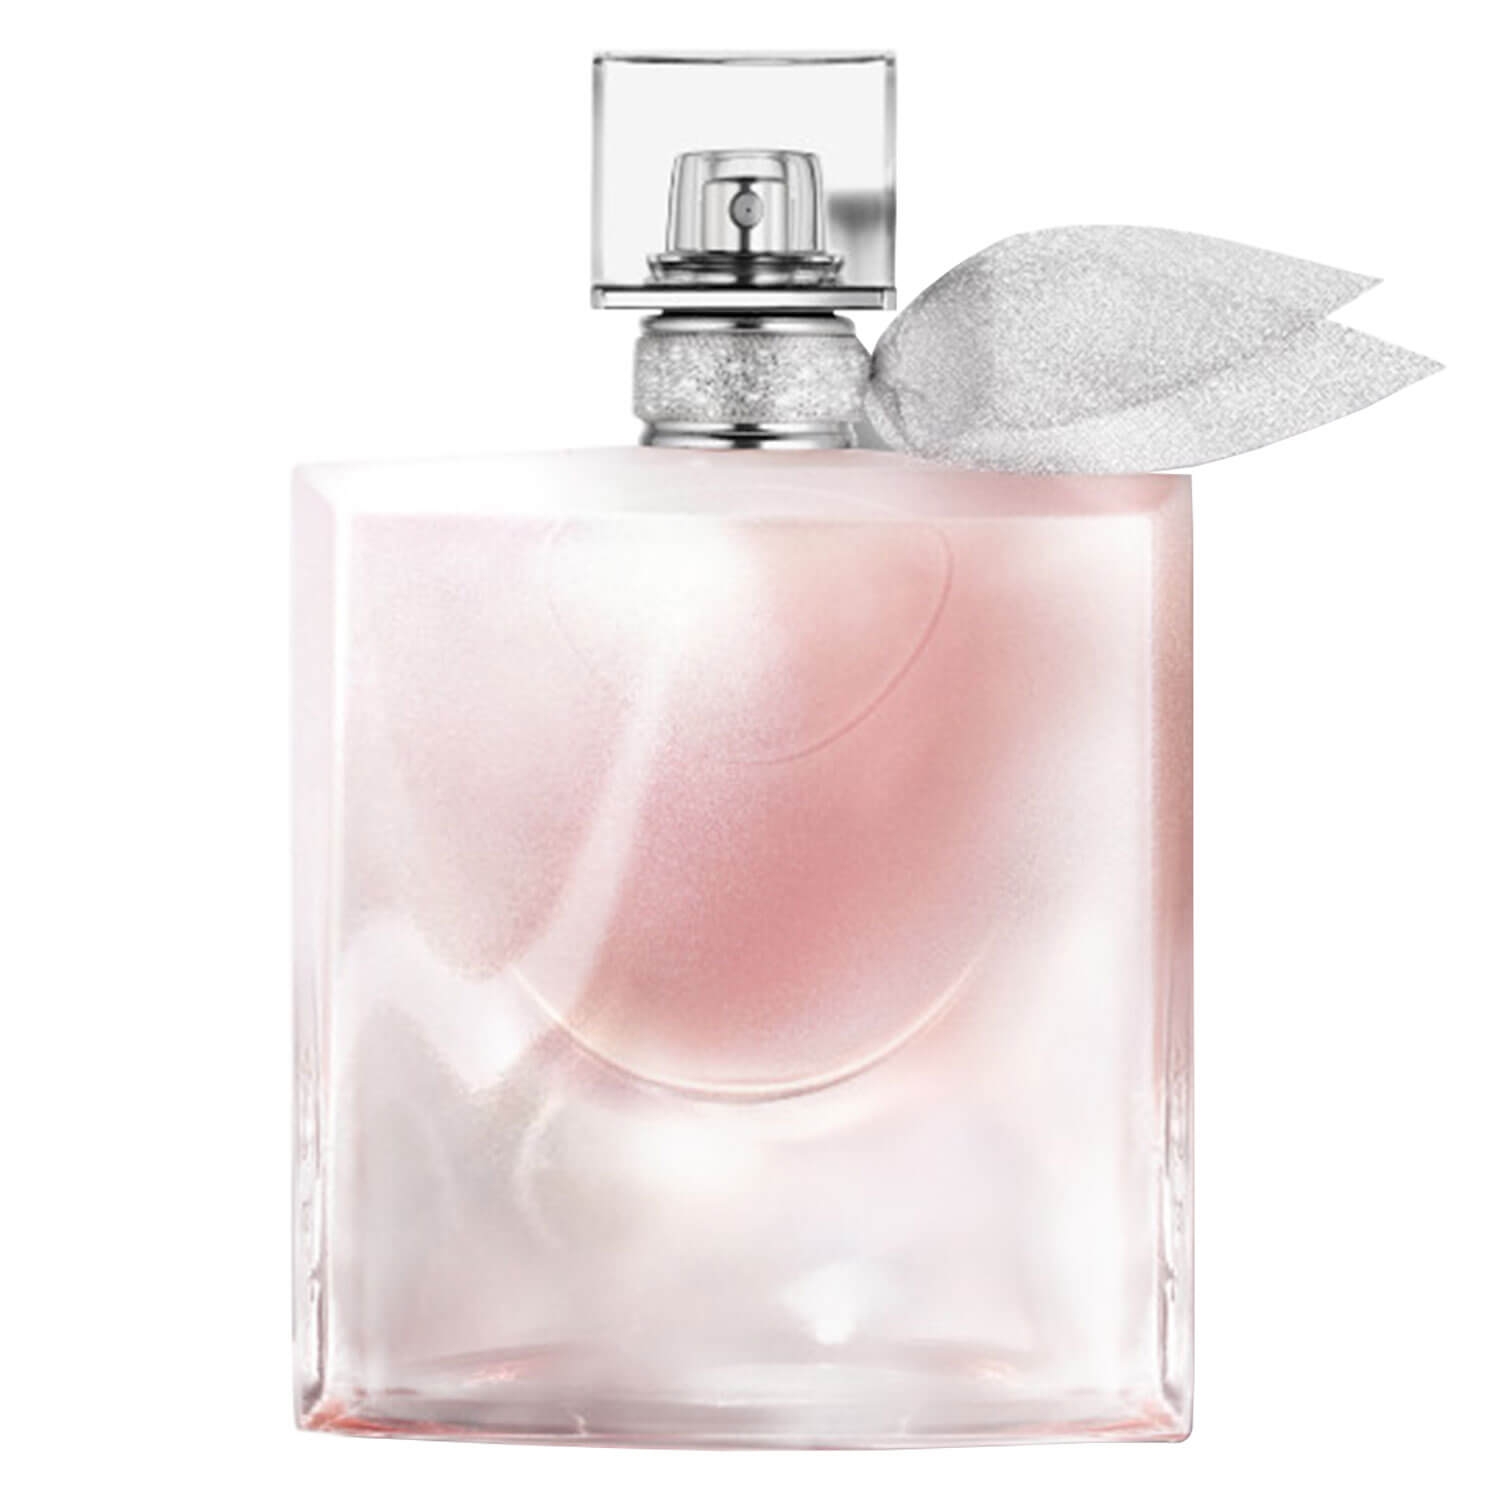 Produktbild von La Vie est Belle - Blanche Eau de Parfum